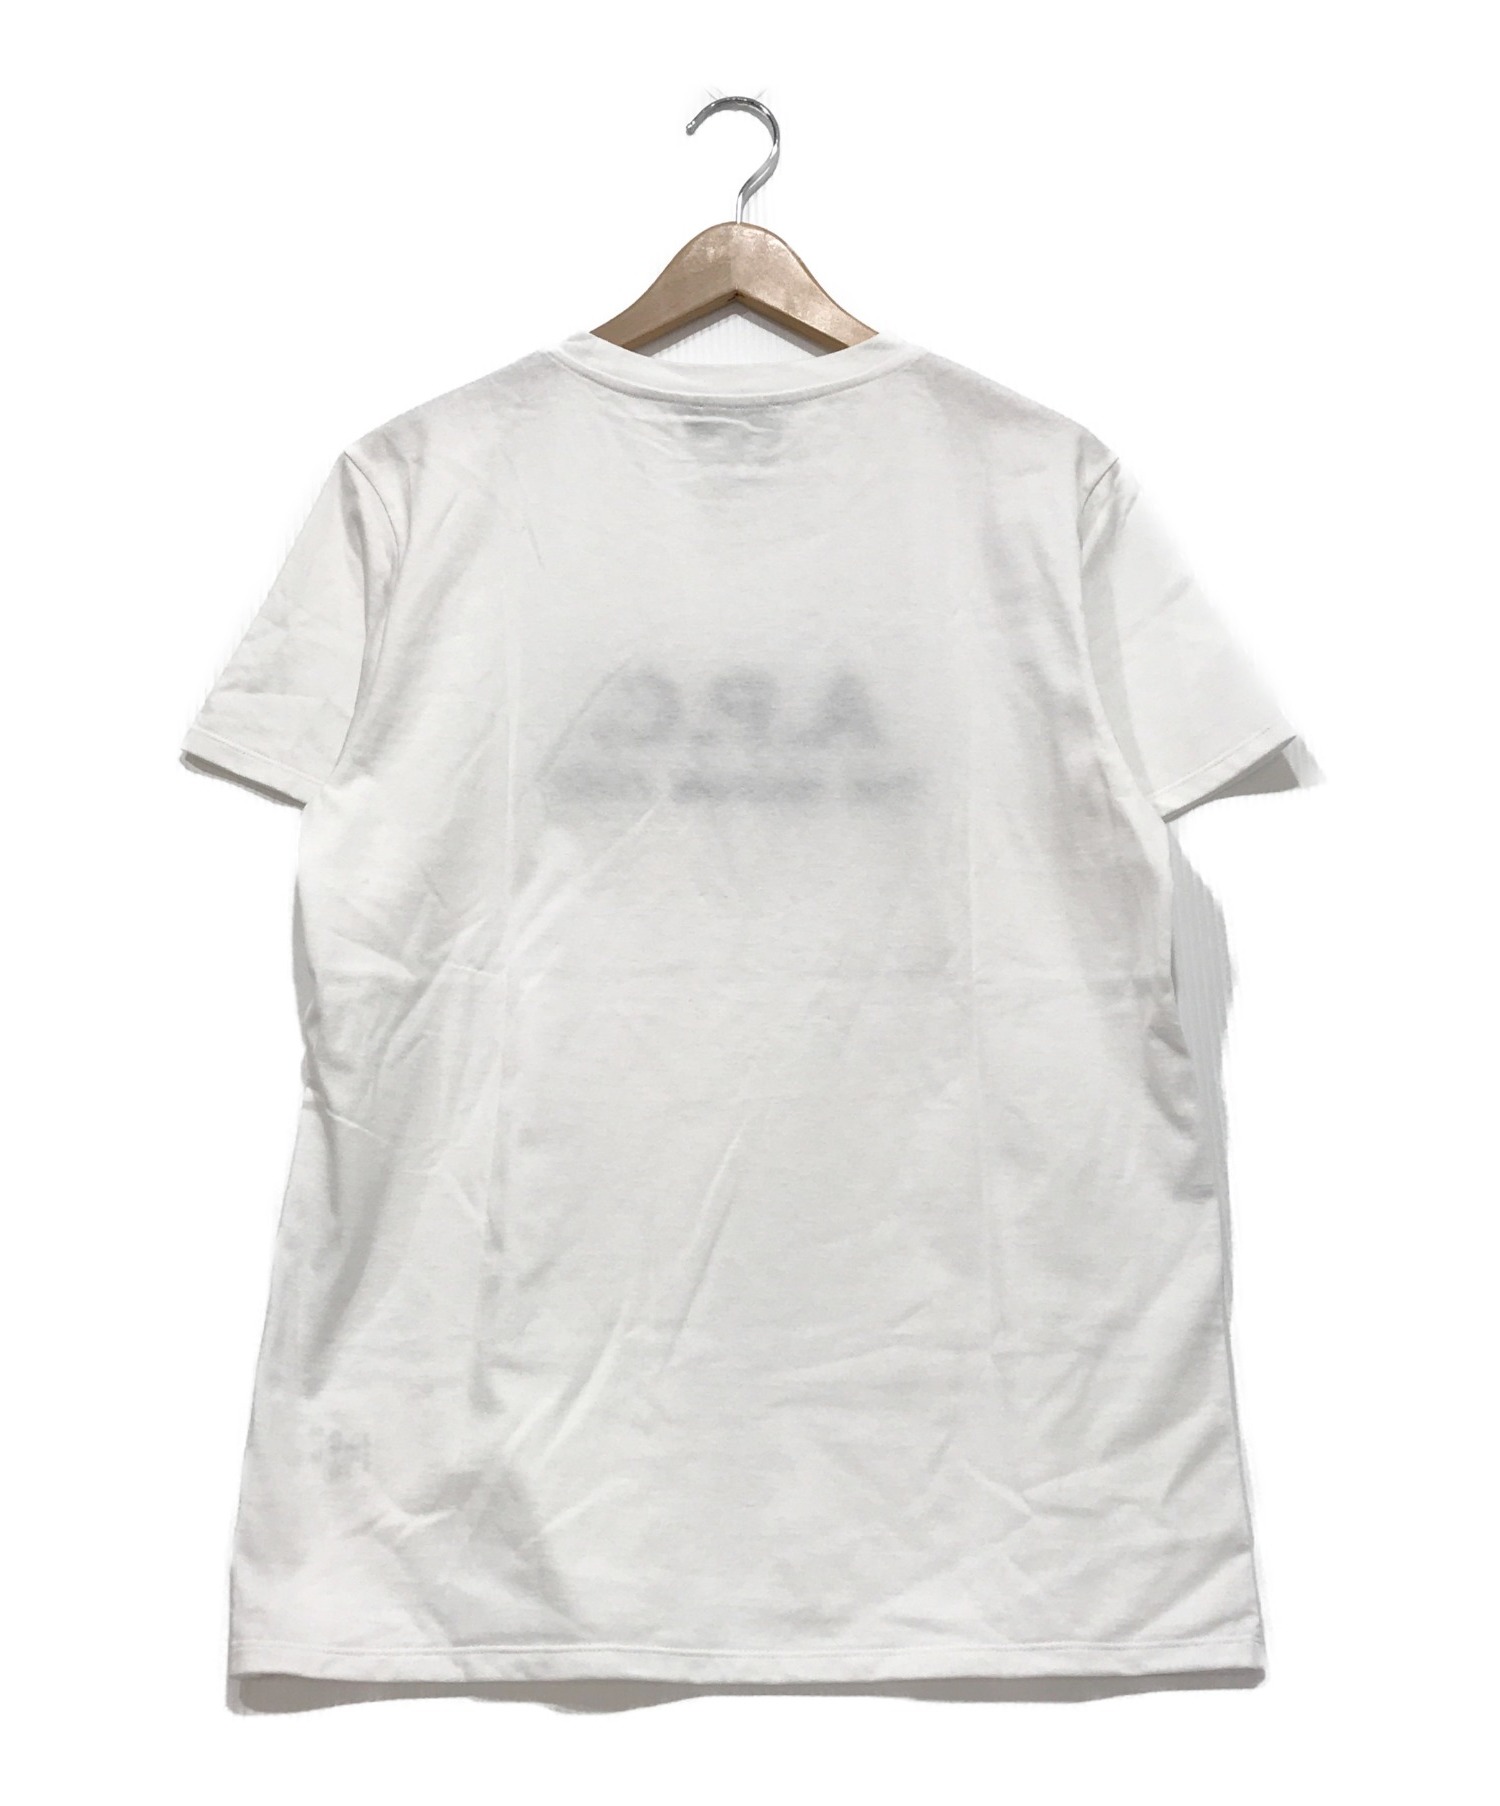 A.P.C. (アーペーセー) 刺繍ロゴTシャツ ホワイト サイズ:M